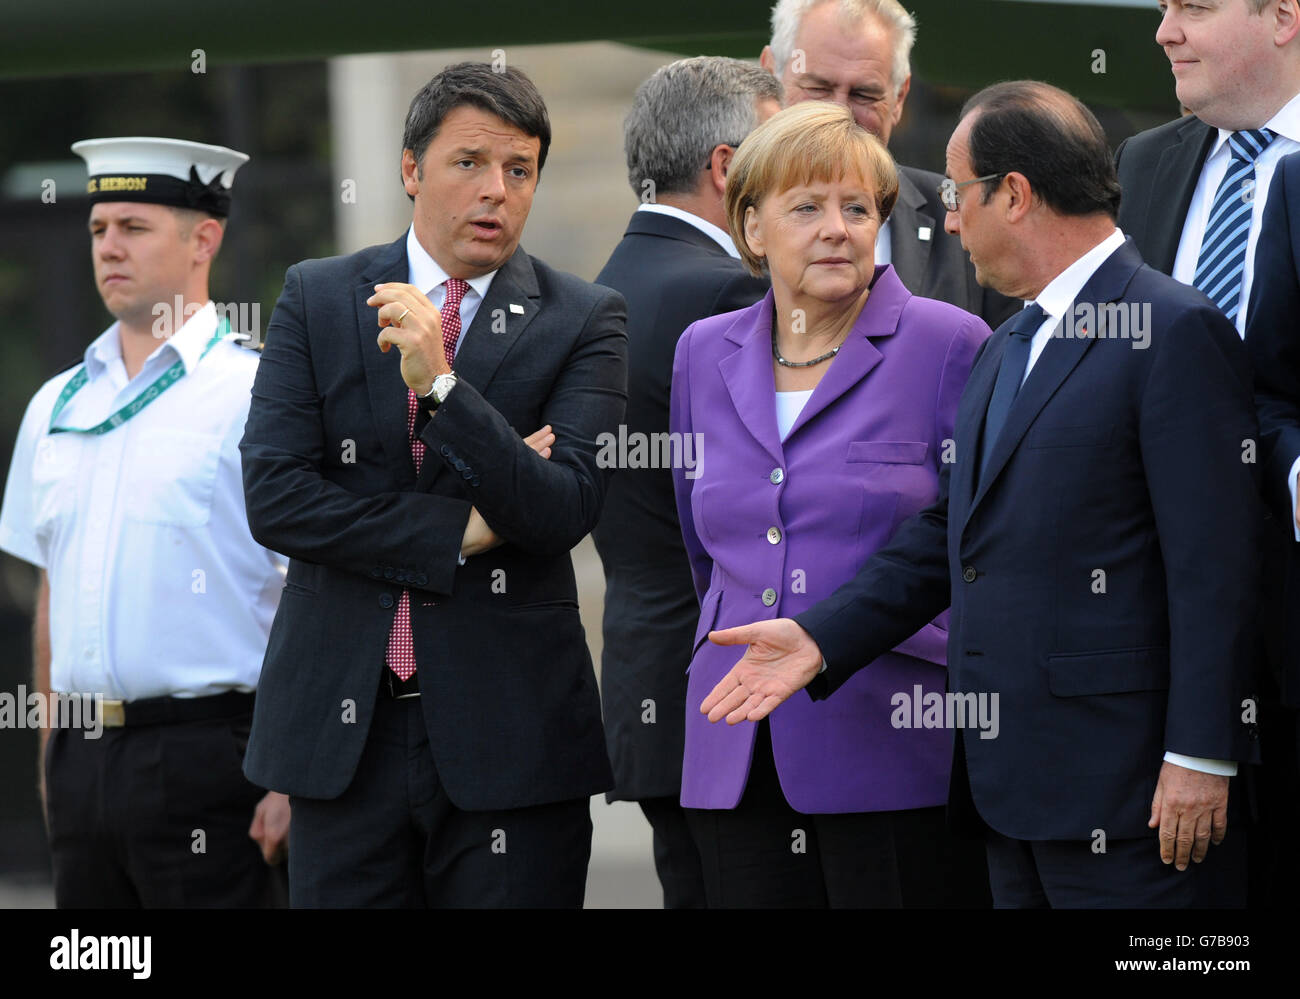 Le Premier ministre italien Matteo Renzi, la chancelière allemande Angela Merkel et le président français Françoise Hollande se réunissent pour assister à un flip d'avions militaires en provenance des pays membres de l'OTAN le dernier jour du sommet au Celtic Manor Resort de Newport, au sud du pays de Galles. Banque D'Images